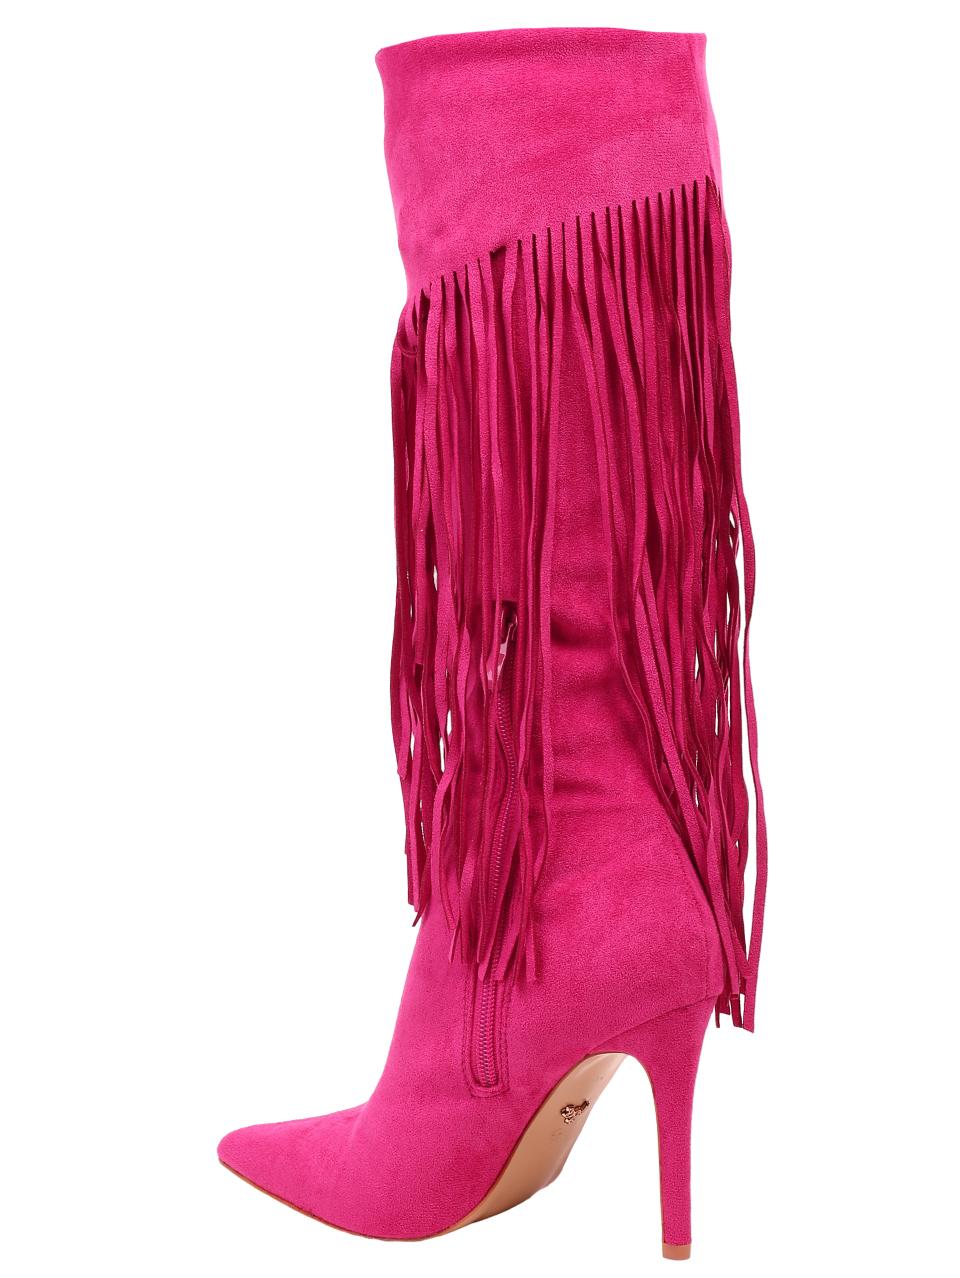 Елегантни дамски ботуши с декоративни ресни в цвят фуксия 1M-23588 fuchsia